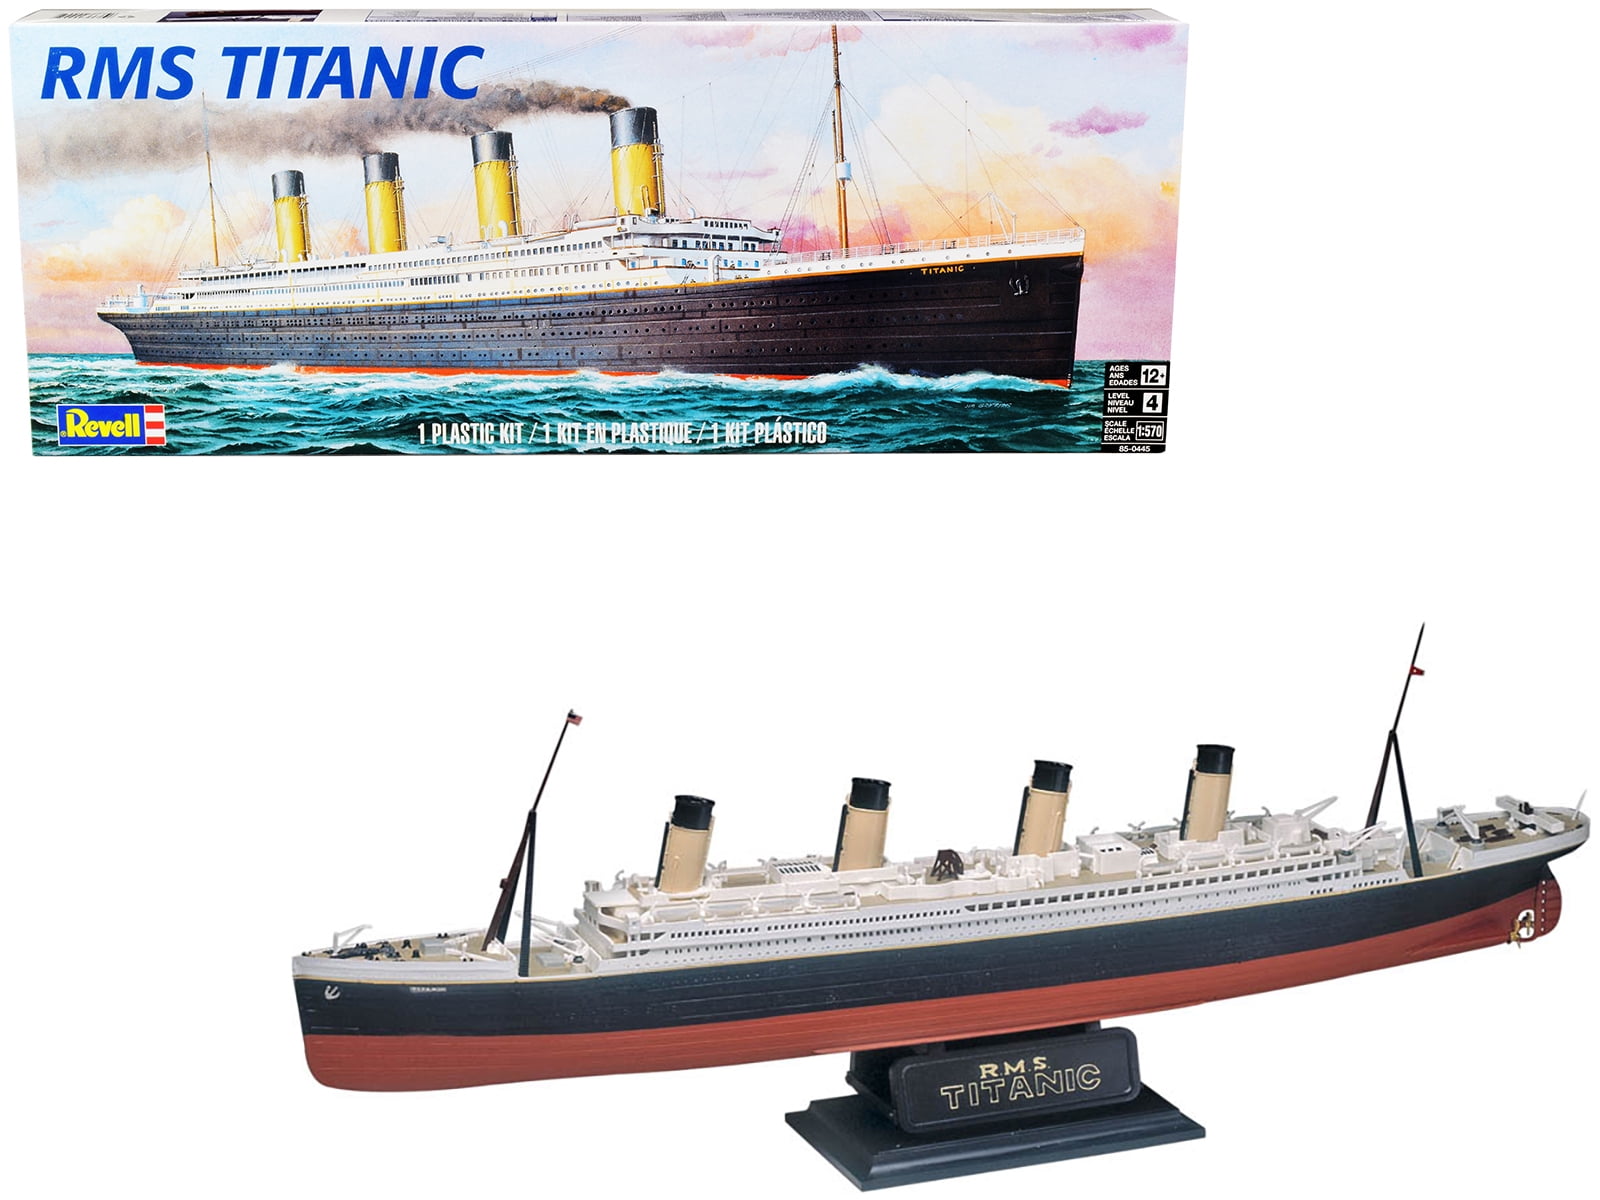 Level 4 Model Kit RMS Titanic Passenger Liner Ship 1/570 Scale Model by Revell